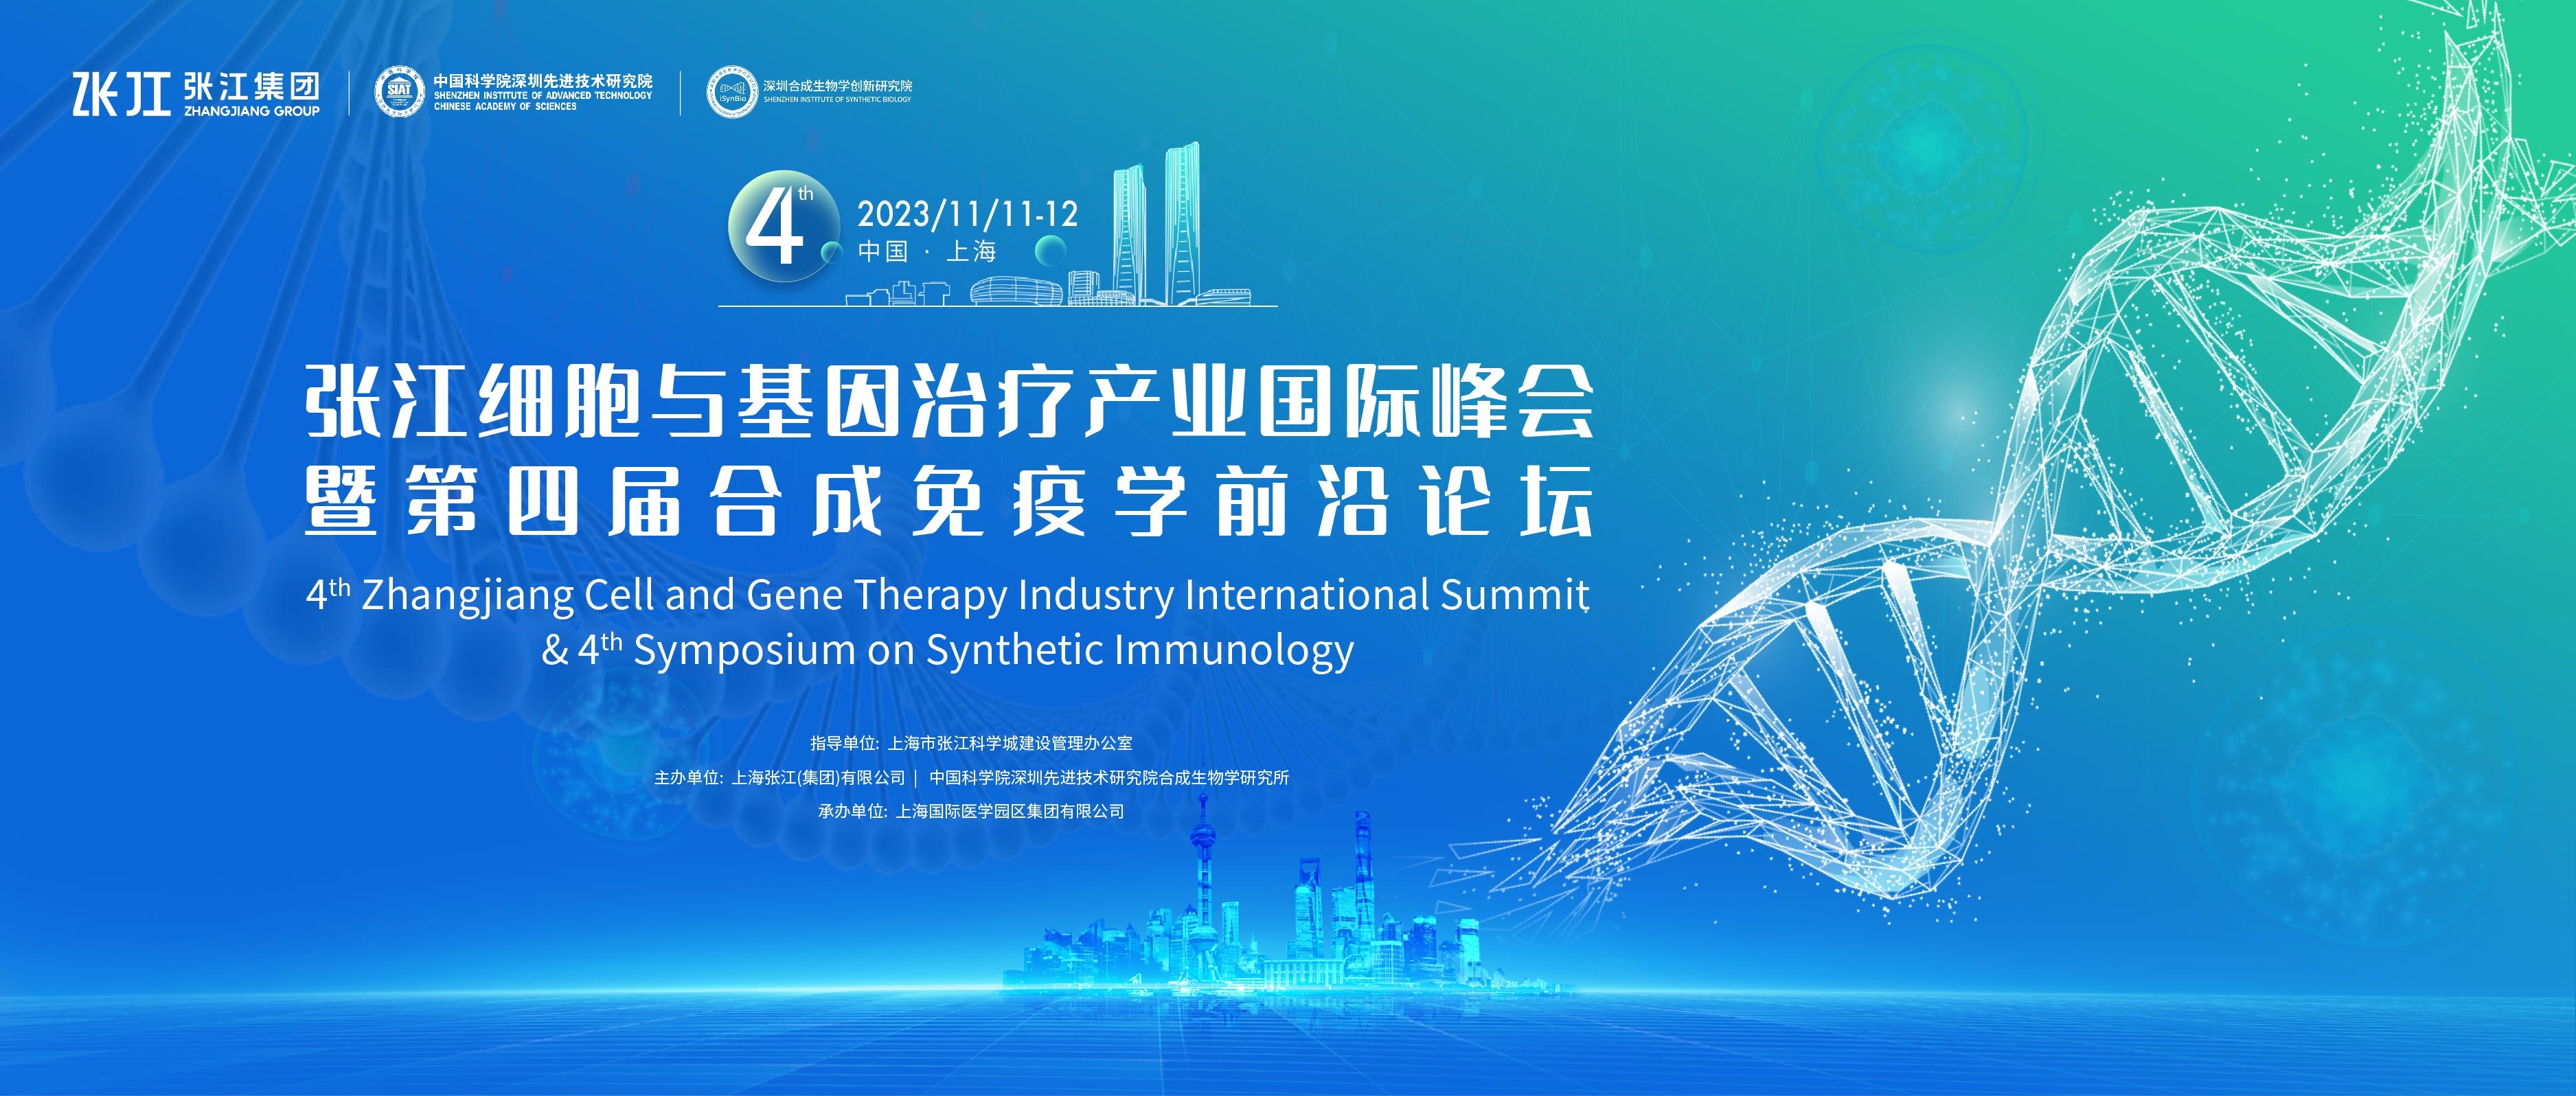 星光璀璨，首轮重磅嘉宾公开！11月11-12日，张江细胞与基因产业国际峰会暨合成免疫学前沿论坛，邀您共襄行业盛会！